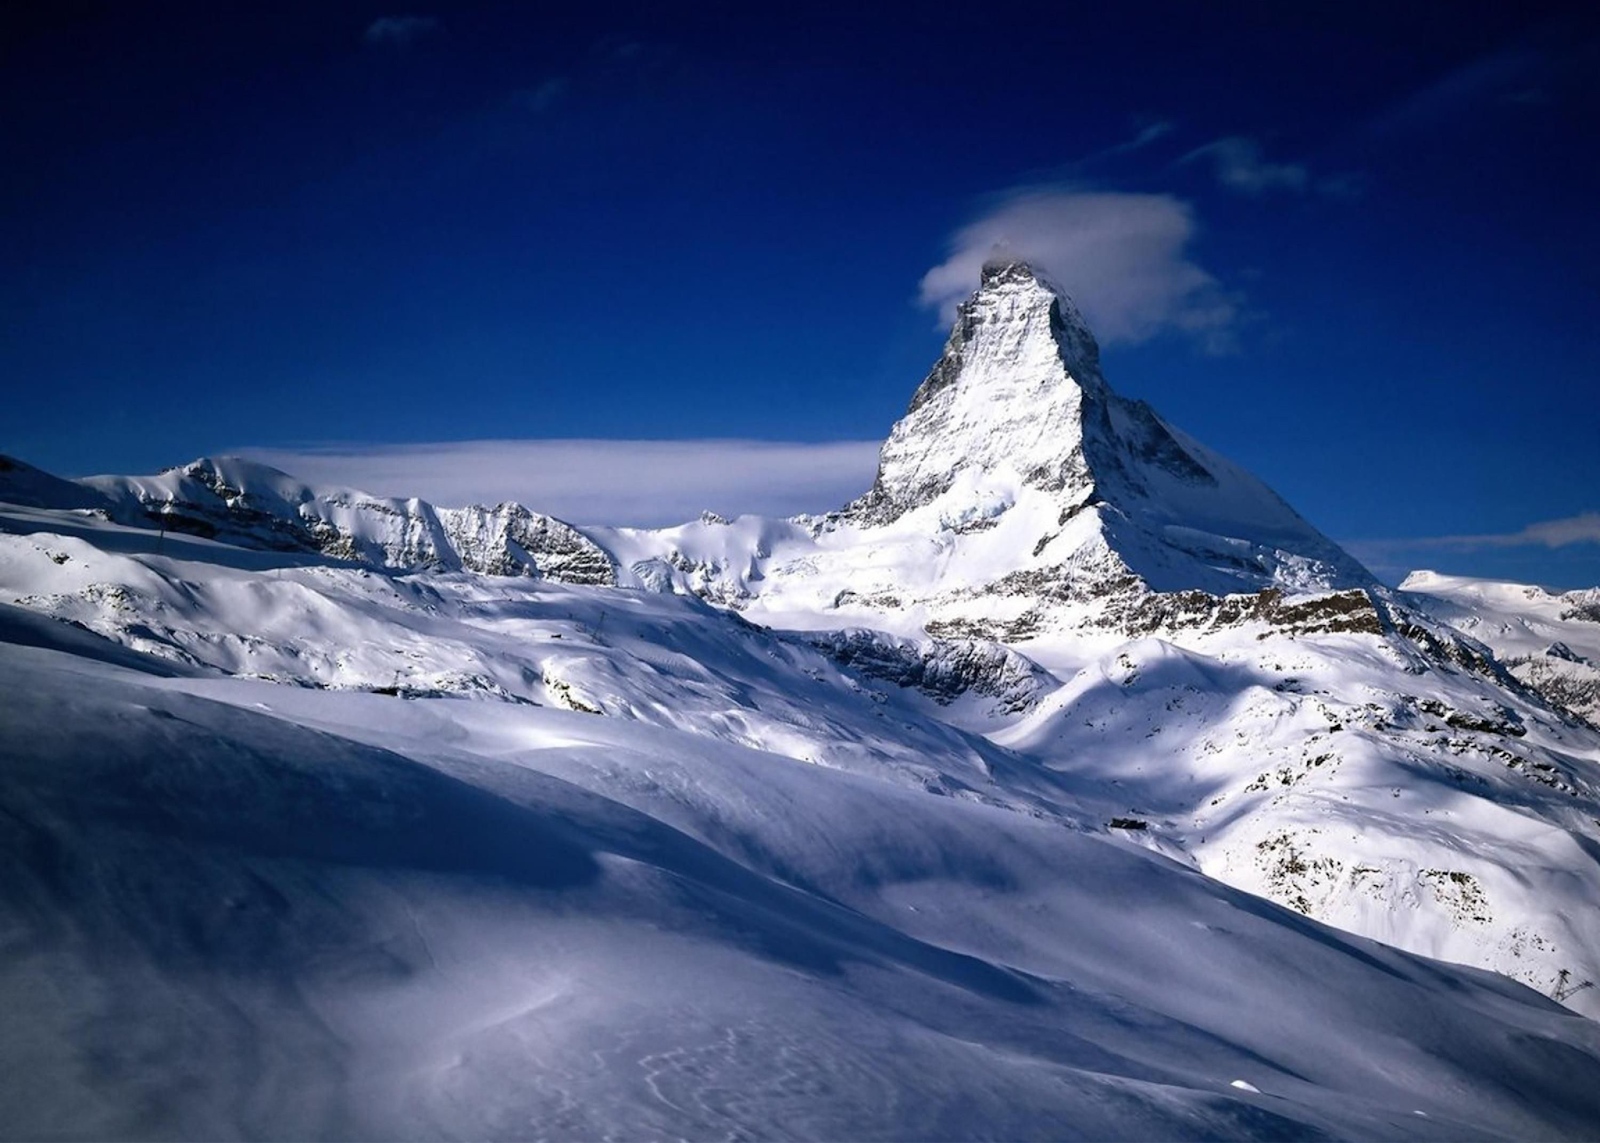 Le cervin, montagne Suisse emblématique qui a inspiré la marque “Toblerone”, est connu pour l'alpinisme